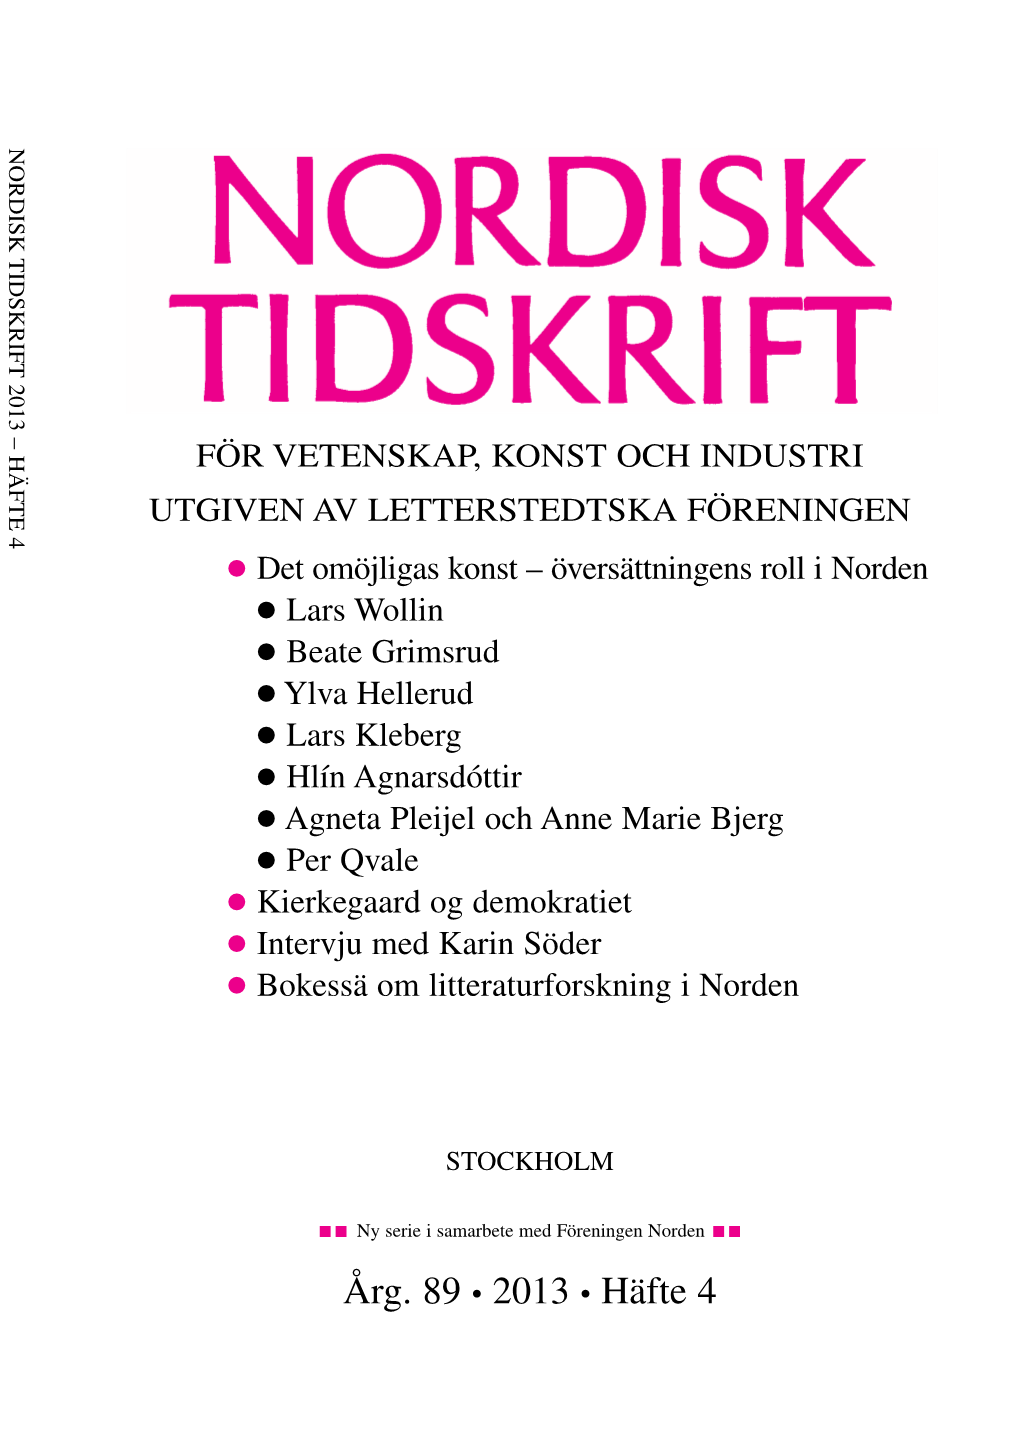 Nordisk Tidskrift 4/2013 322 Lars Wollin